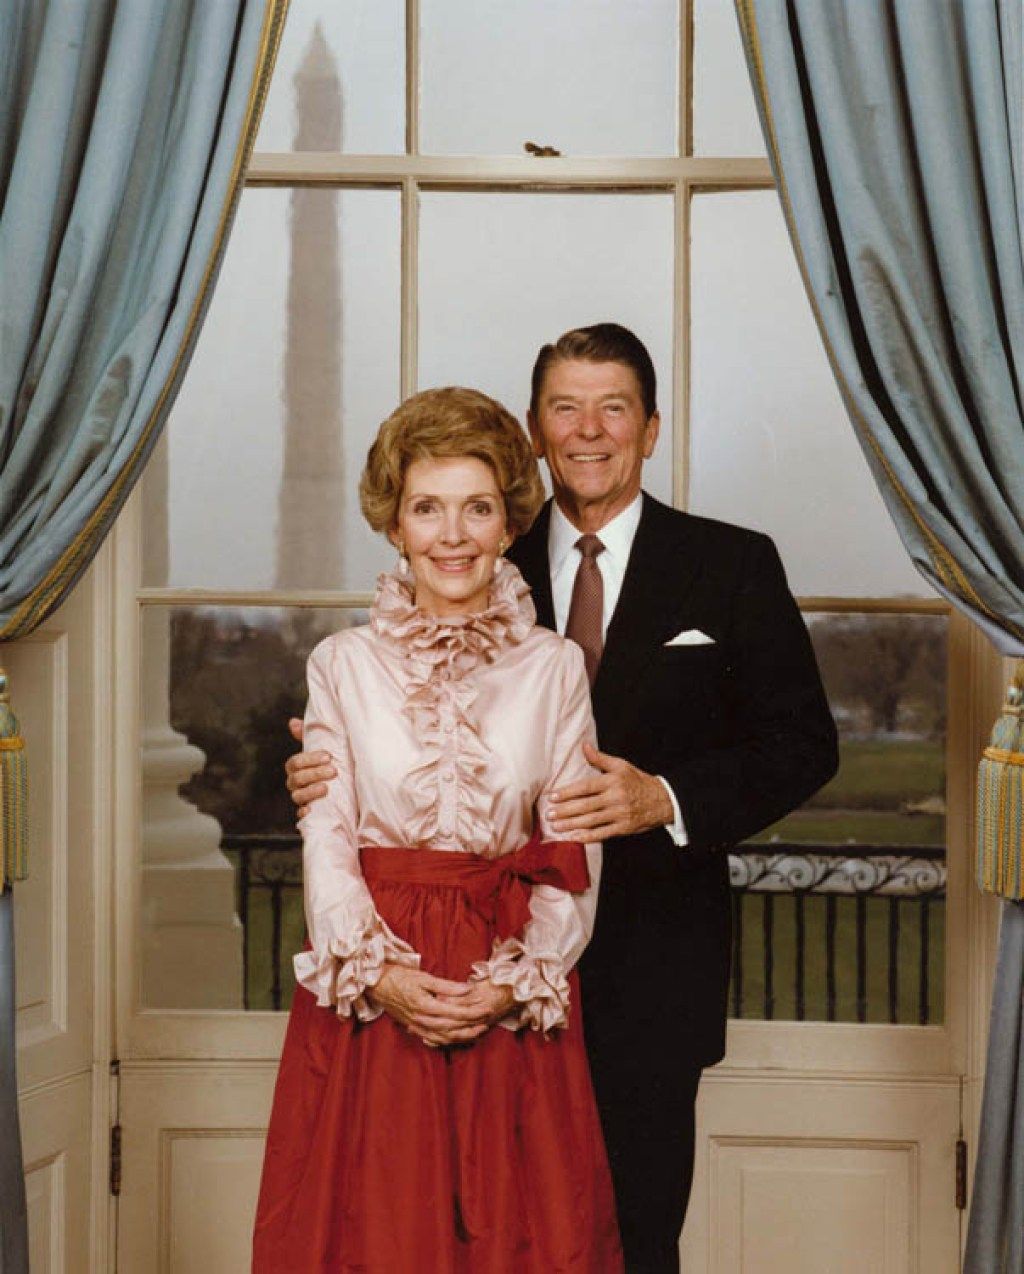 Presidentti Reagan ja rouva Reagan poseeraa Sinisessä huoneessa viralliselle muotokuvalleen, Nancy pukeutunut rypyssä, 1980-luvun muoti